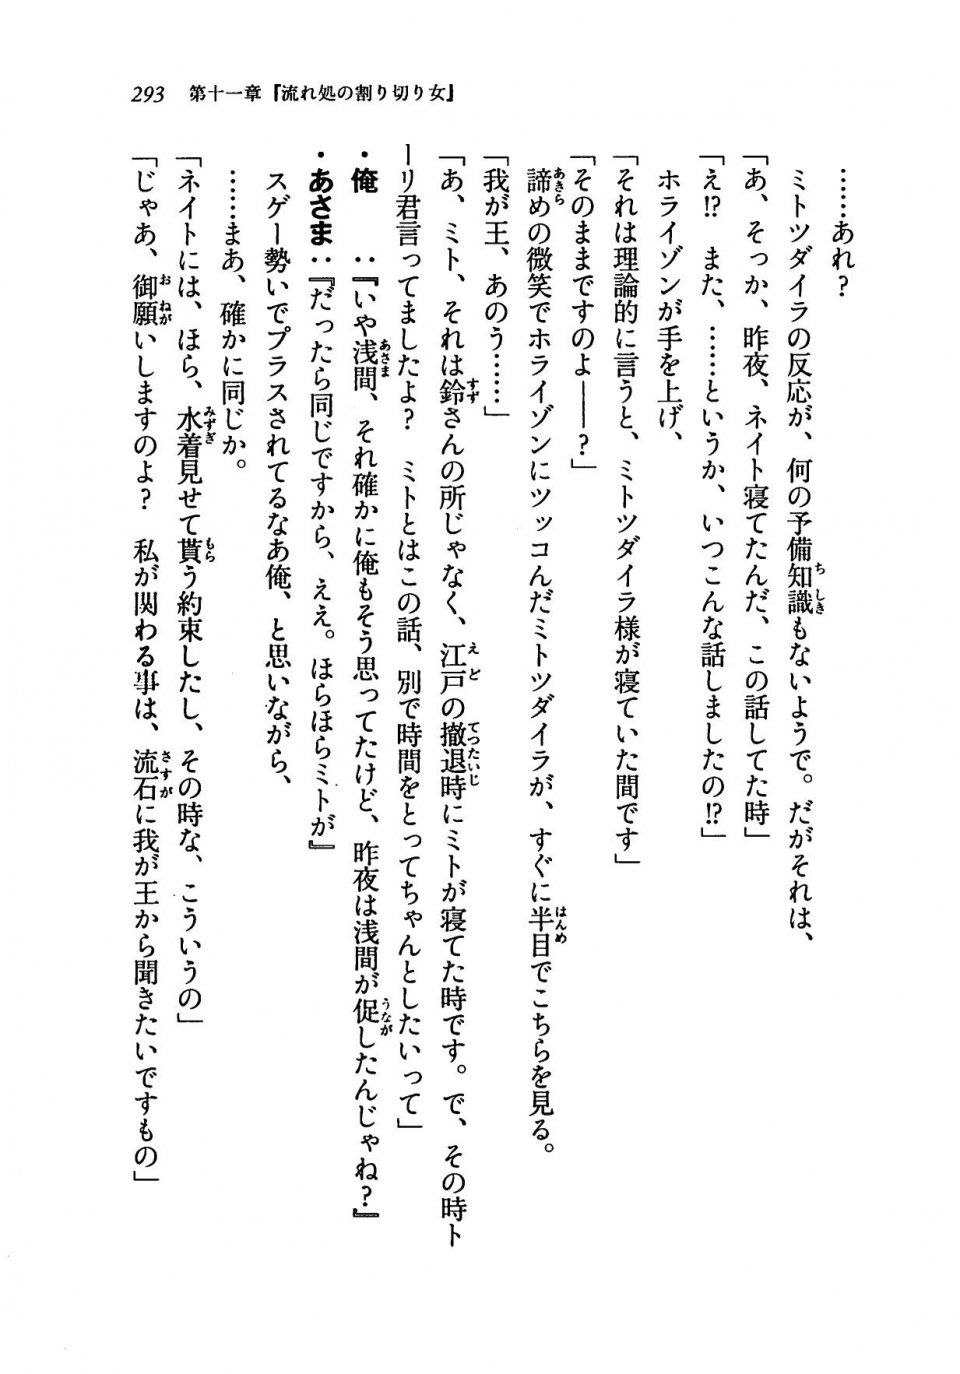 Kyoukai Senjou no Horizon LN Vol 19(8A) - Photo #293